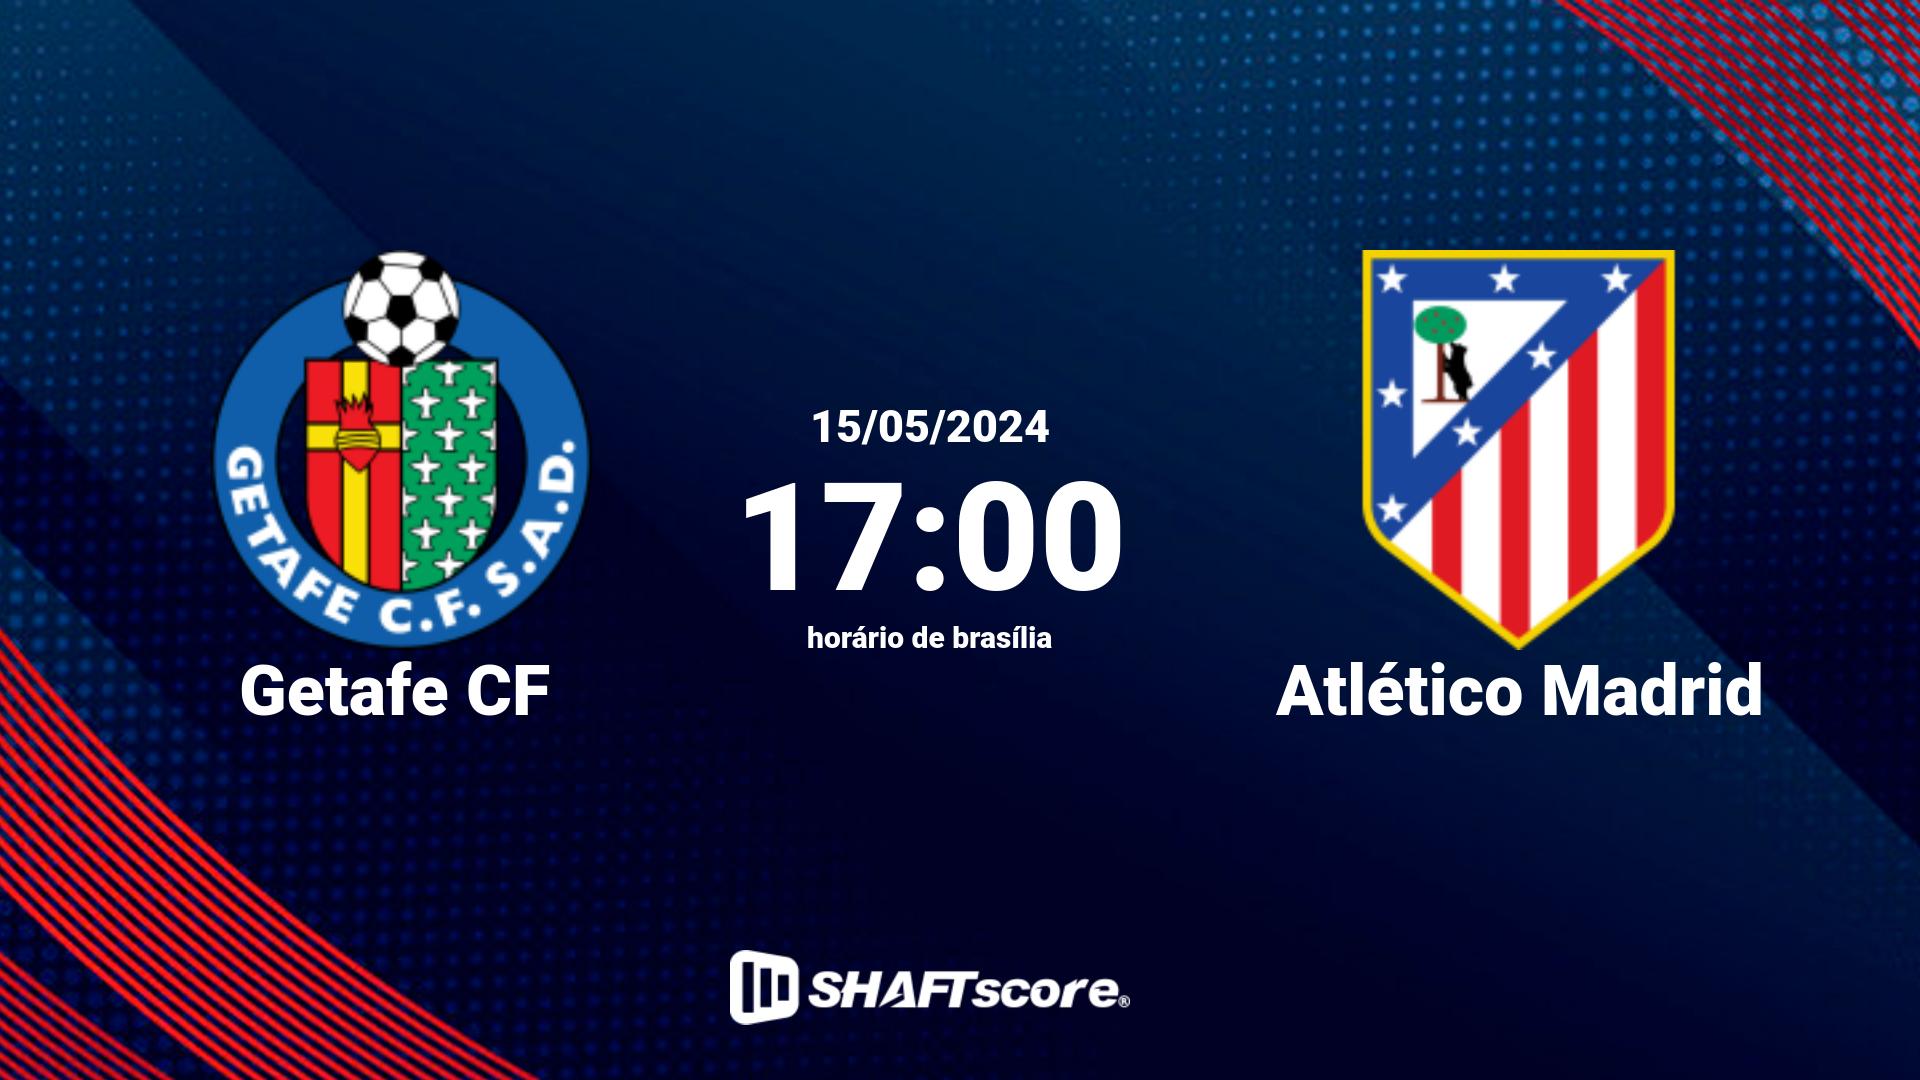 Estatísticas do jogo Getafe CF vs Atlético Madrid 15.05 17:00